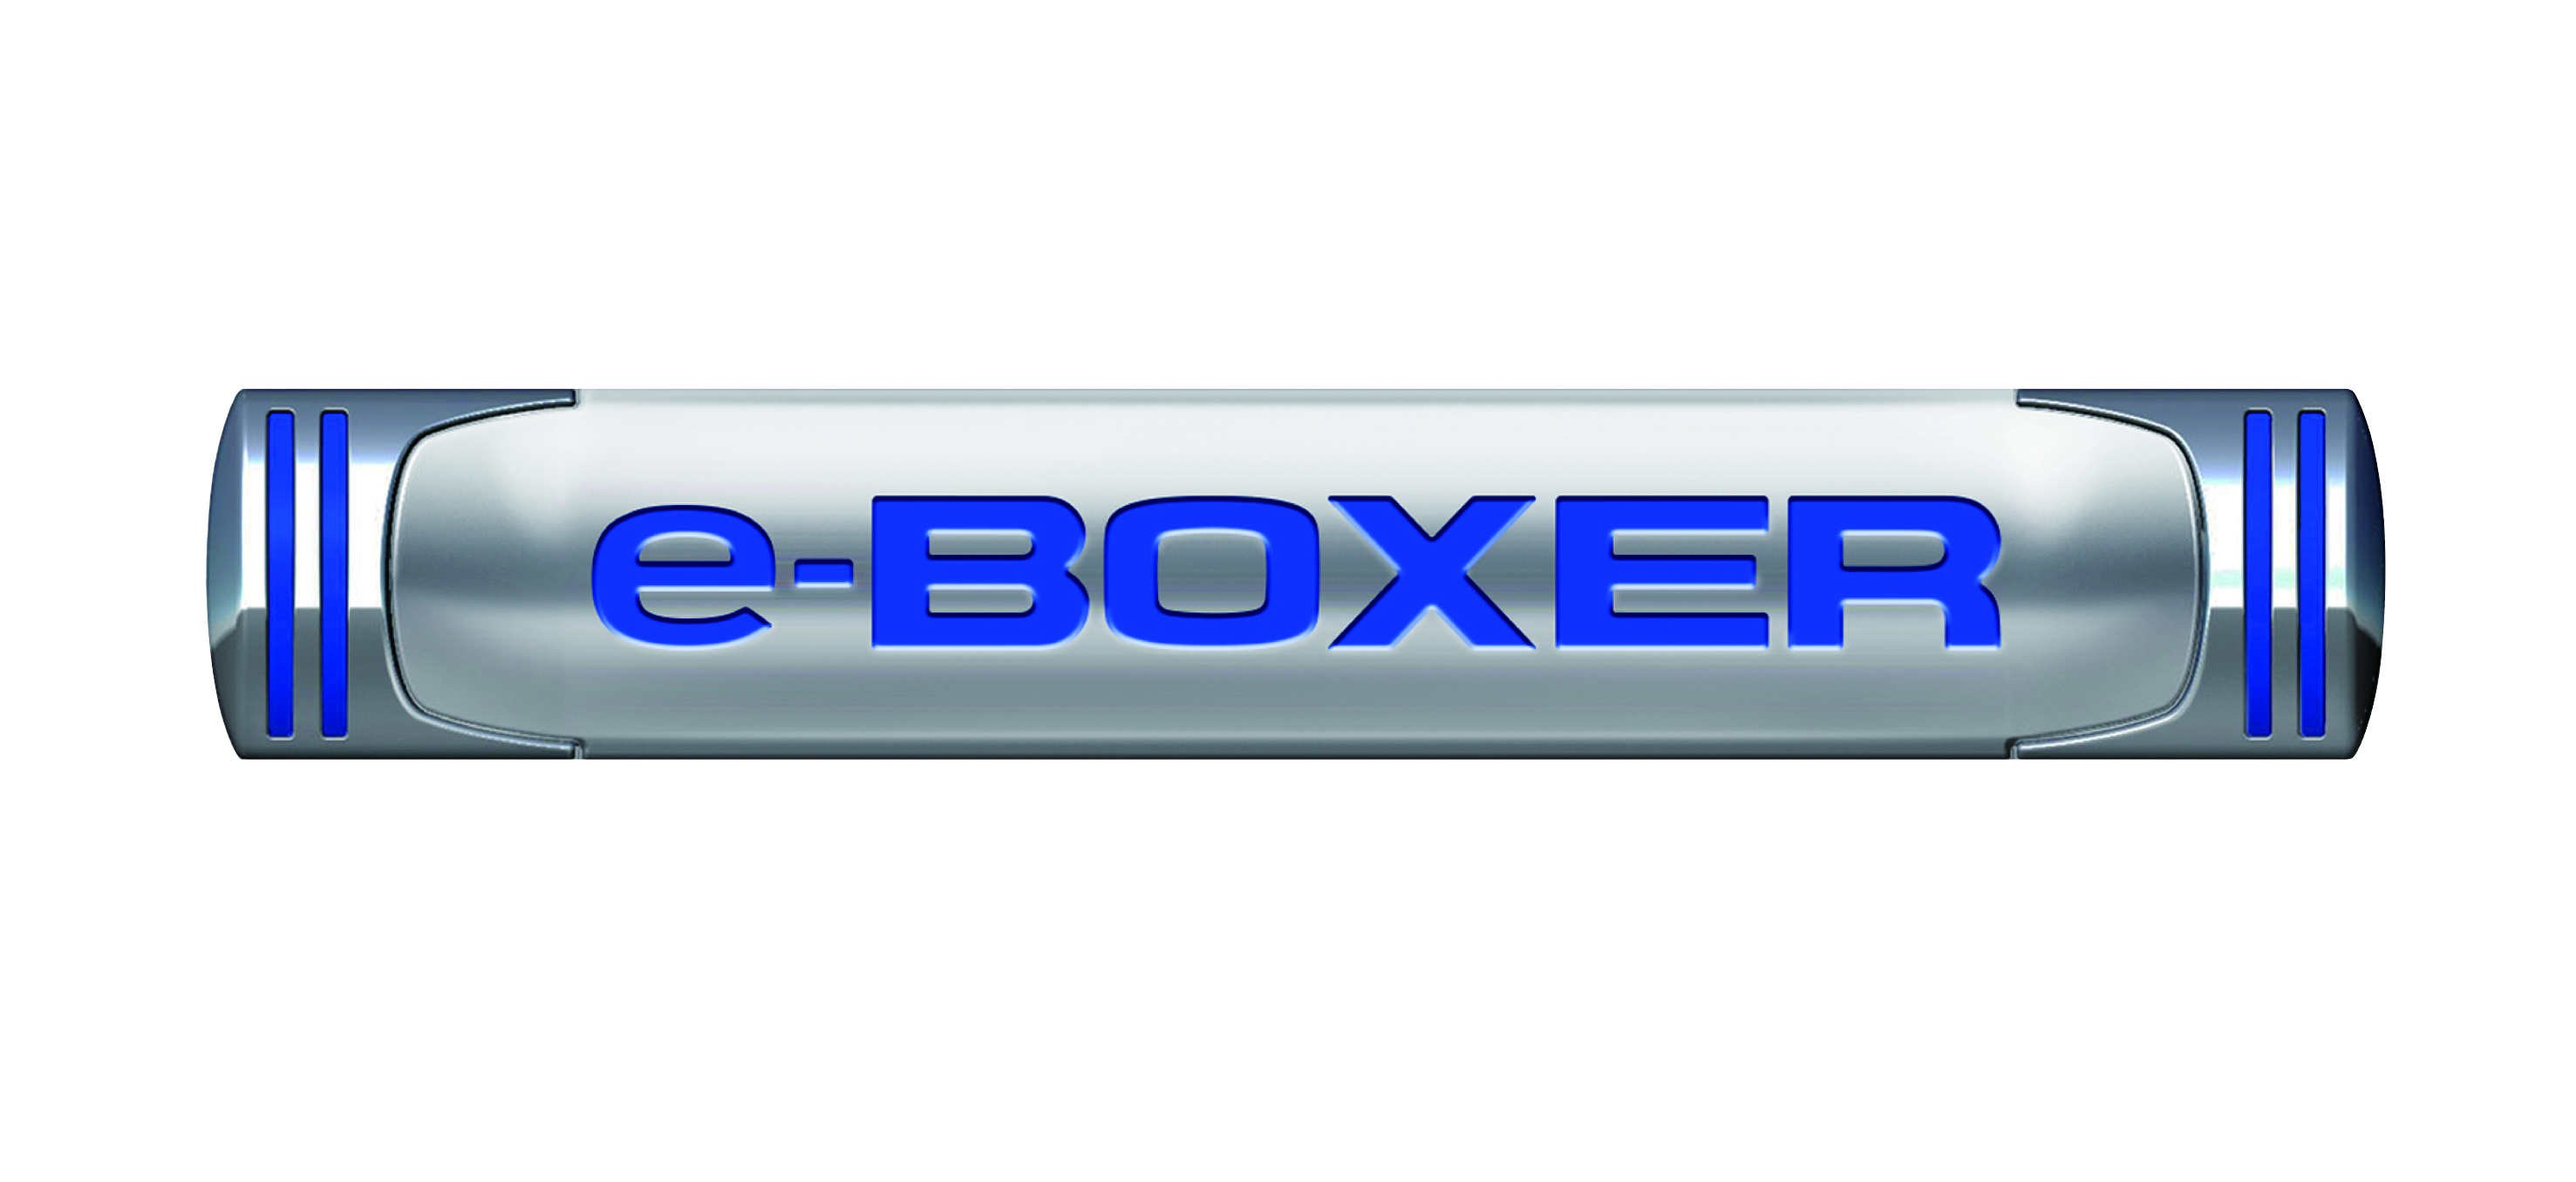 e-BOXER 1